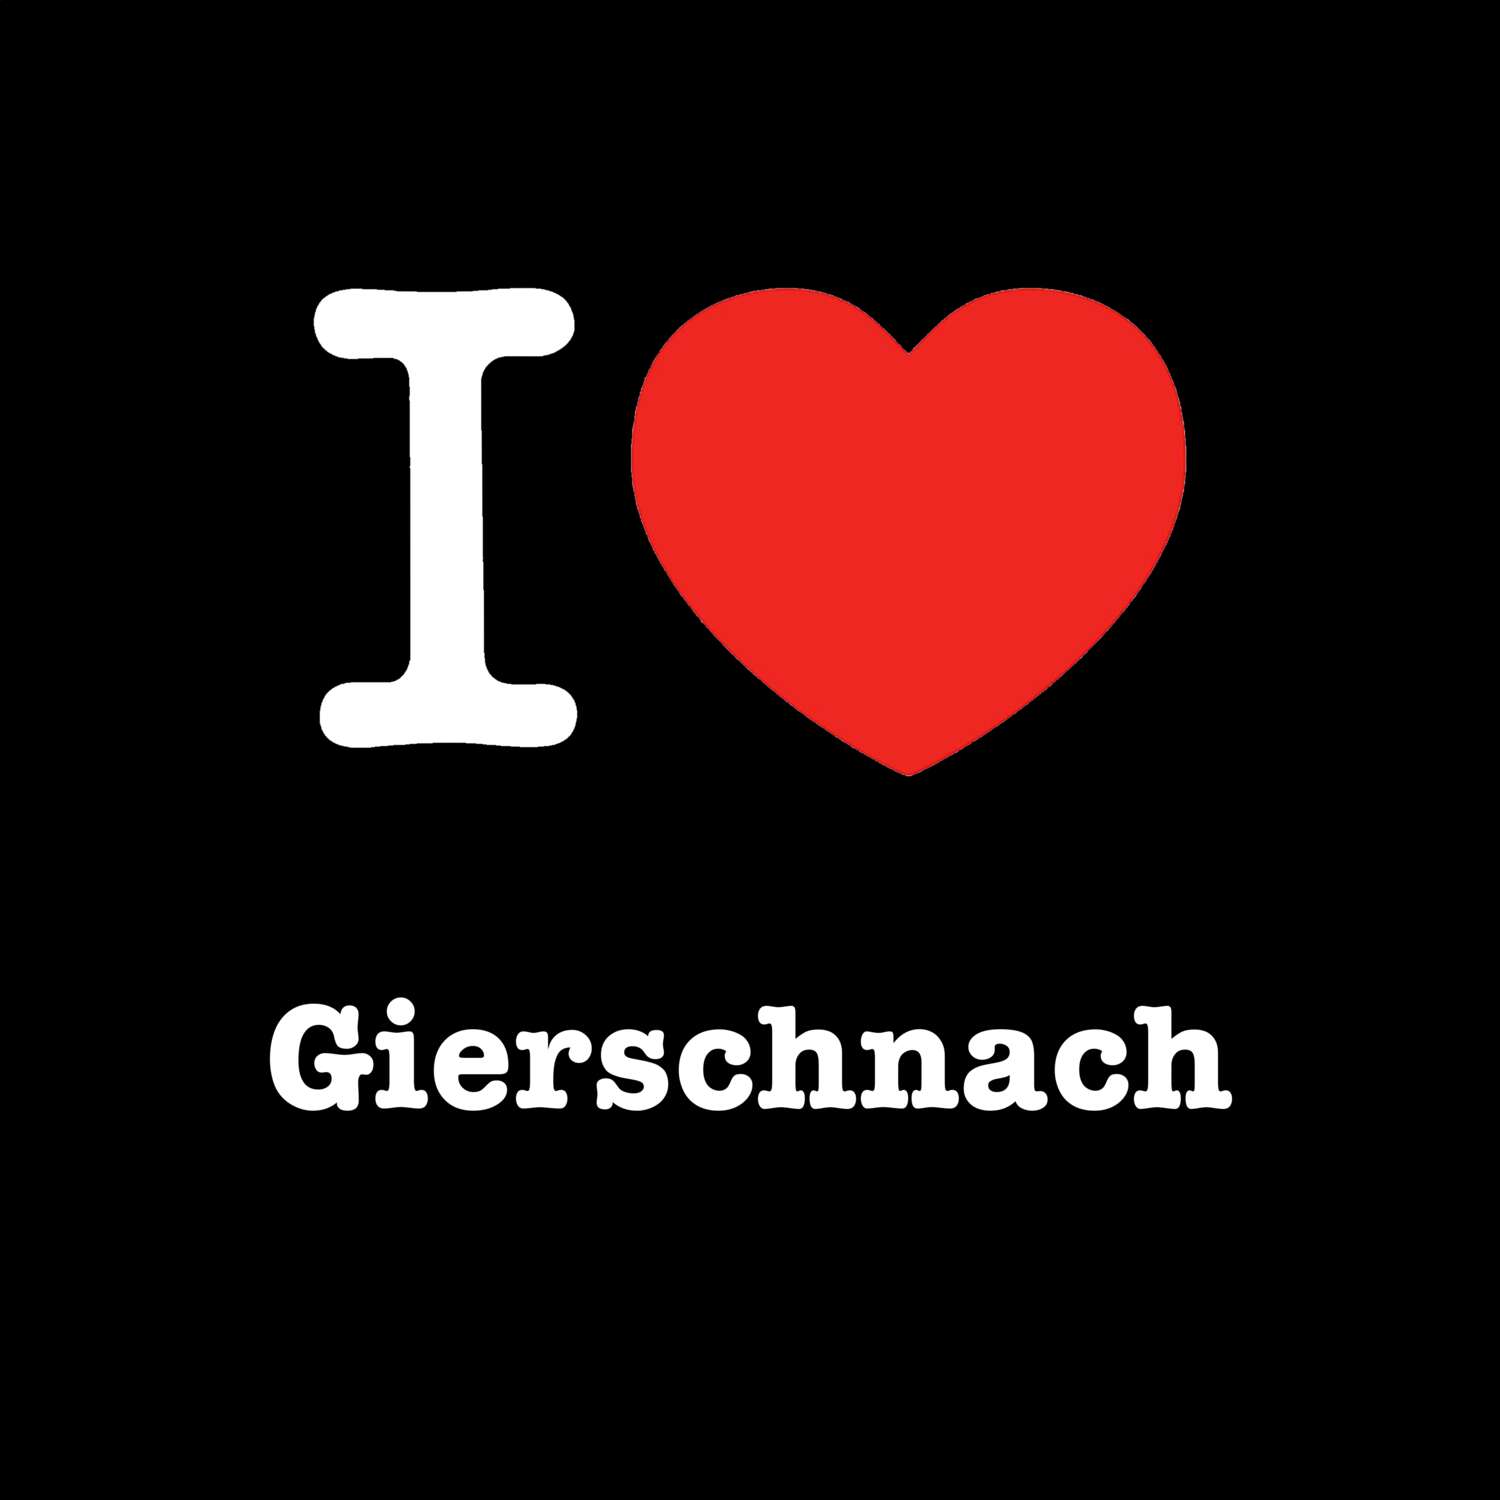 Gierschnach T-Shirt »I love«